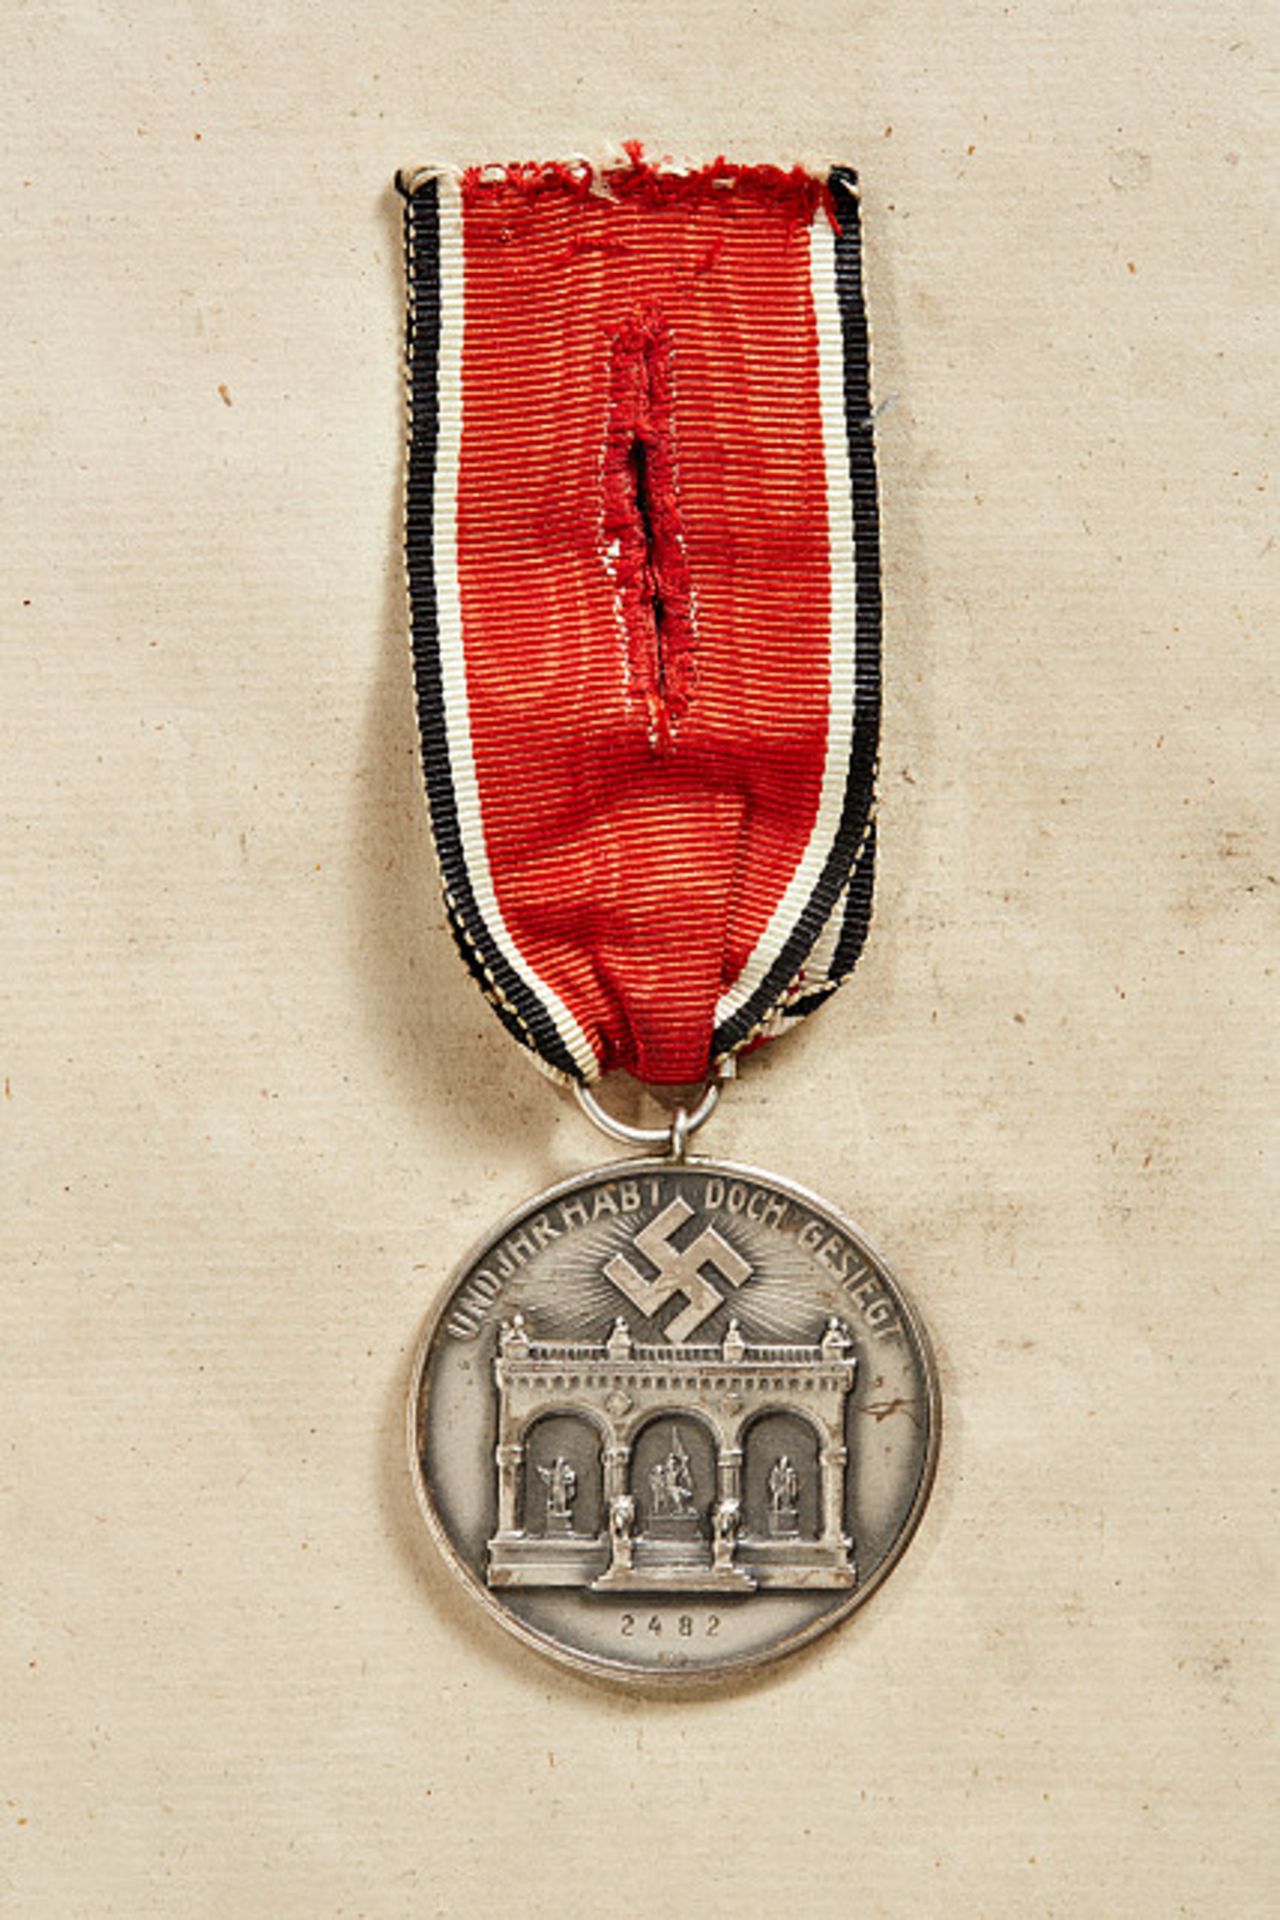 DRITTES REICH - BLUTORDEN DER NSDAP : Ehrenzeichen vom 8./9. November 1923, 2. Modell. Exemplar